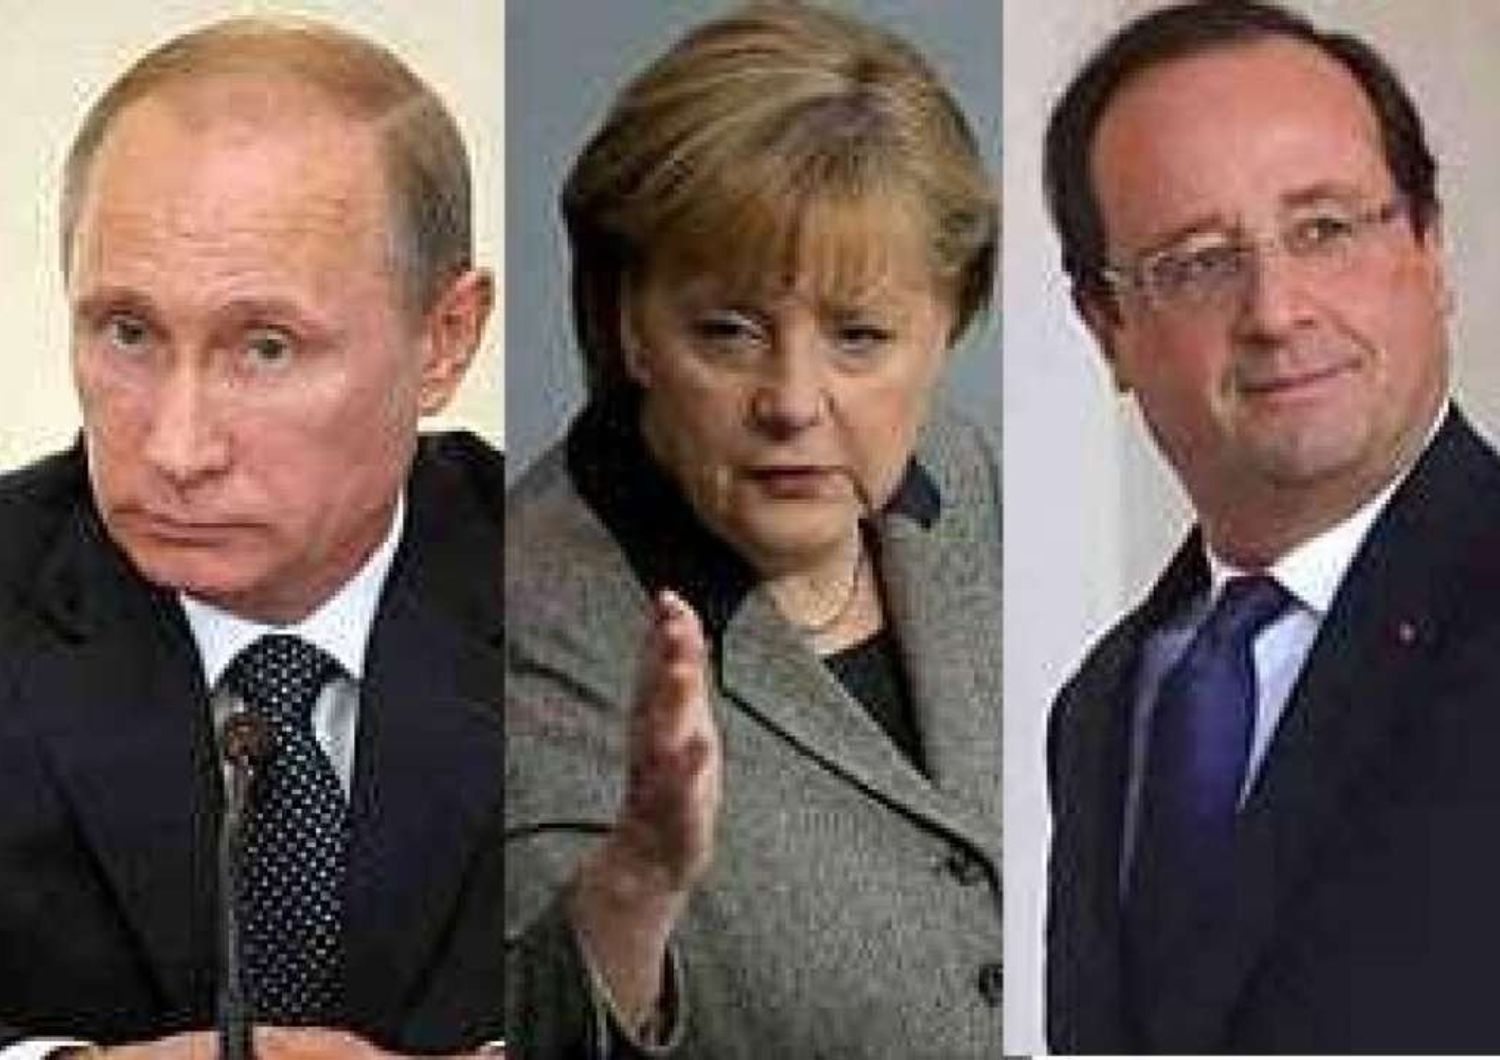 Putin-Merkel-Hollande hold talks on Ukraine